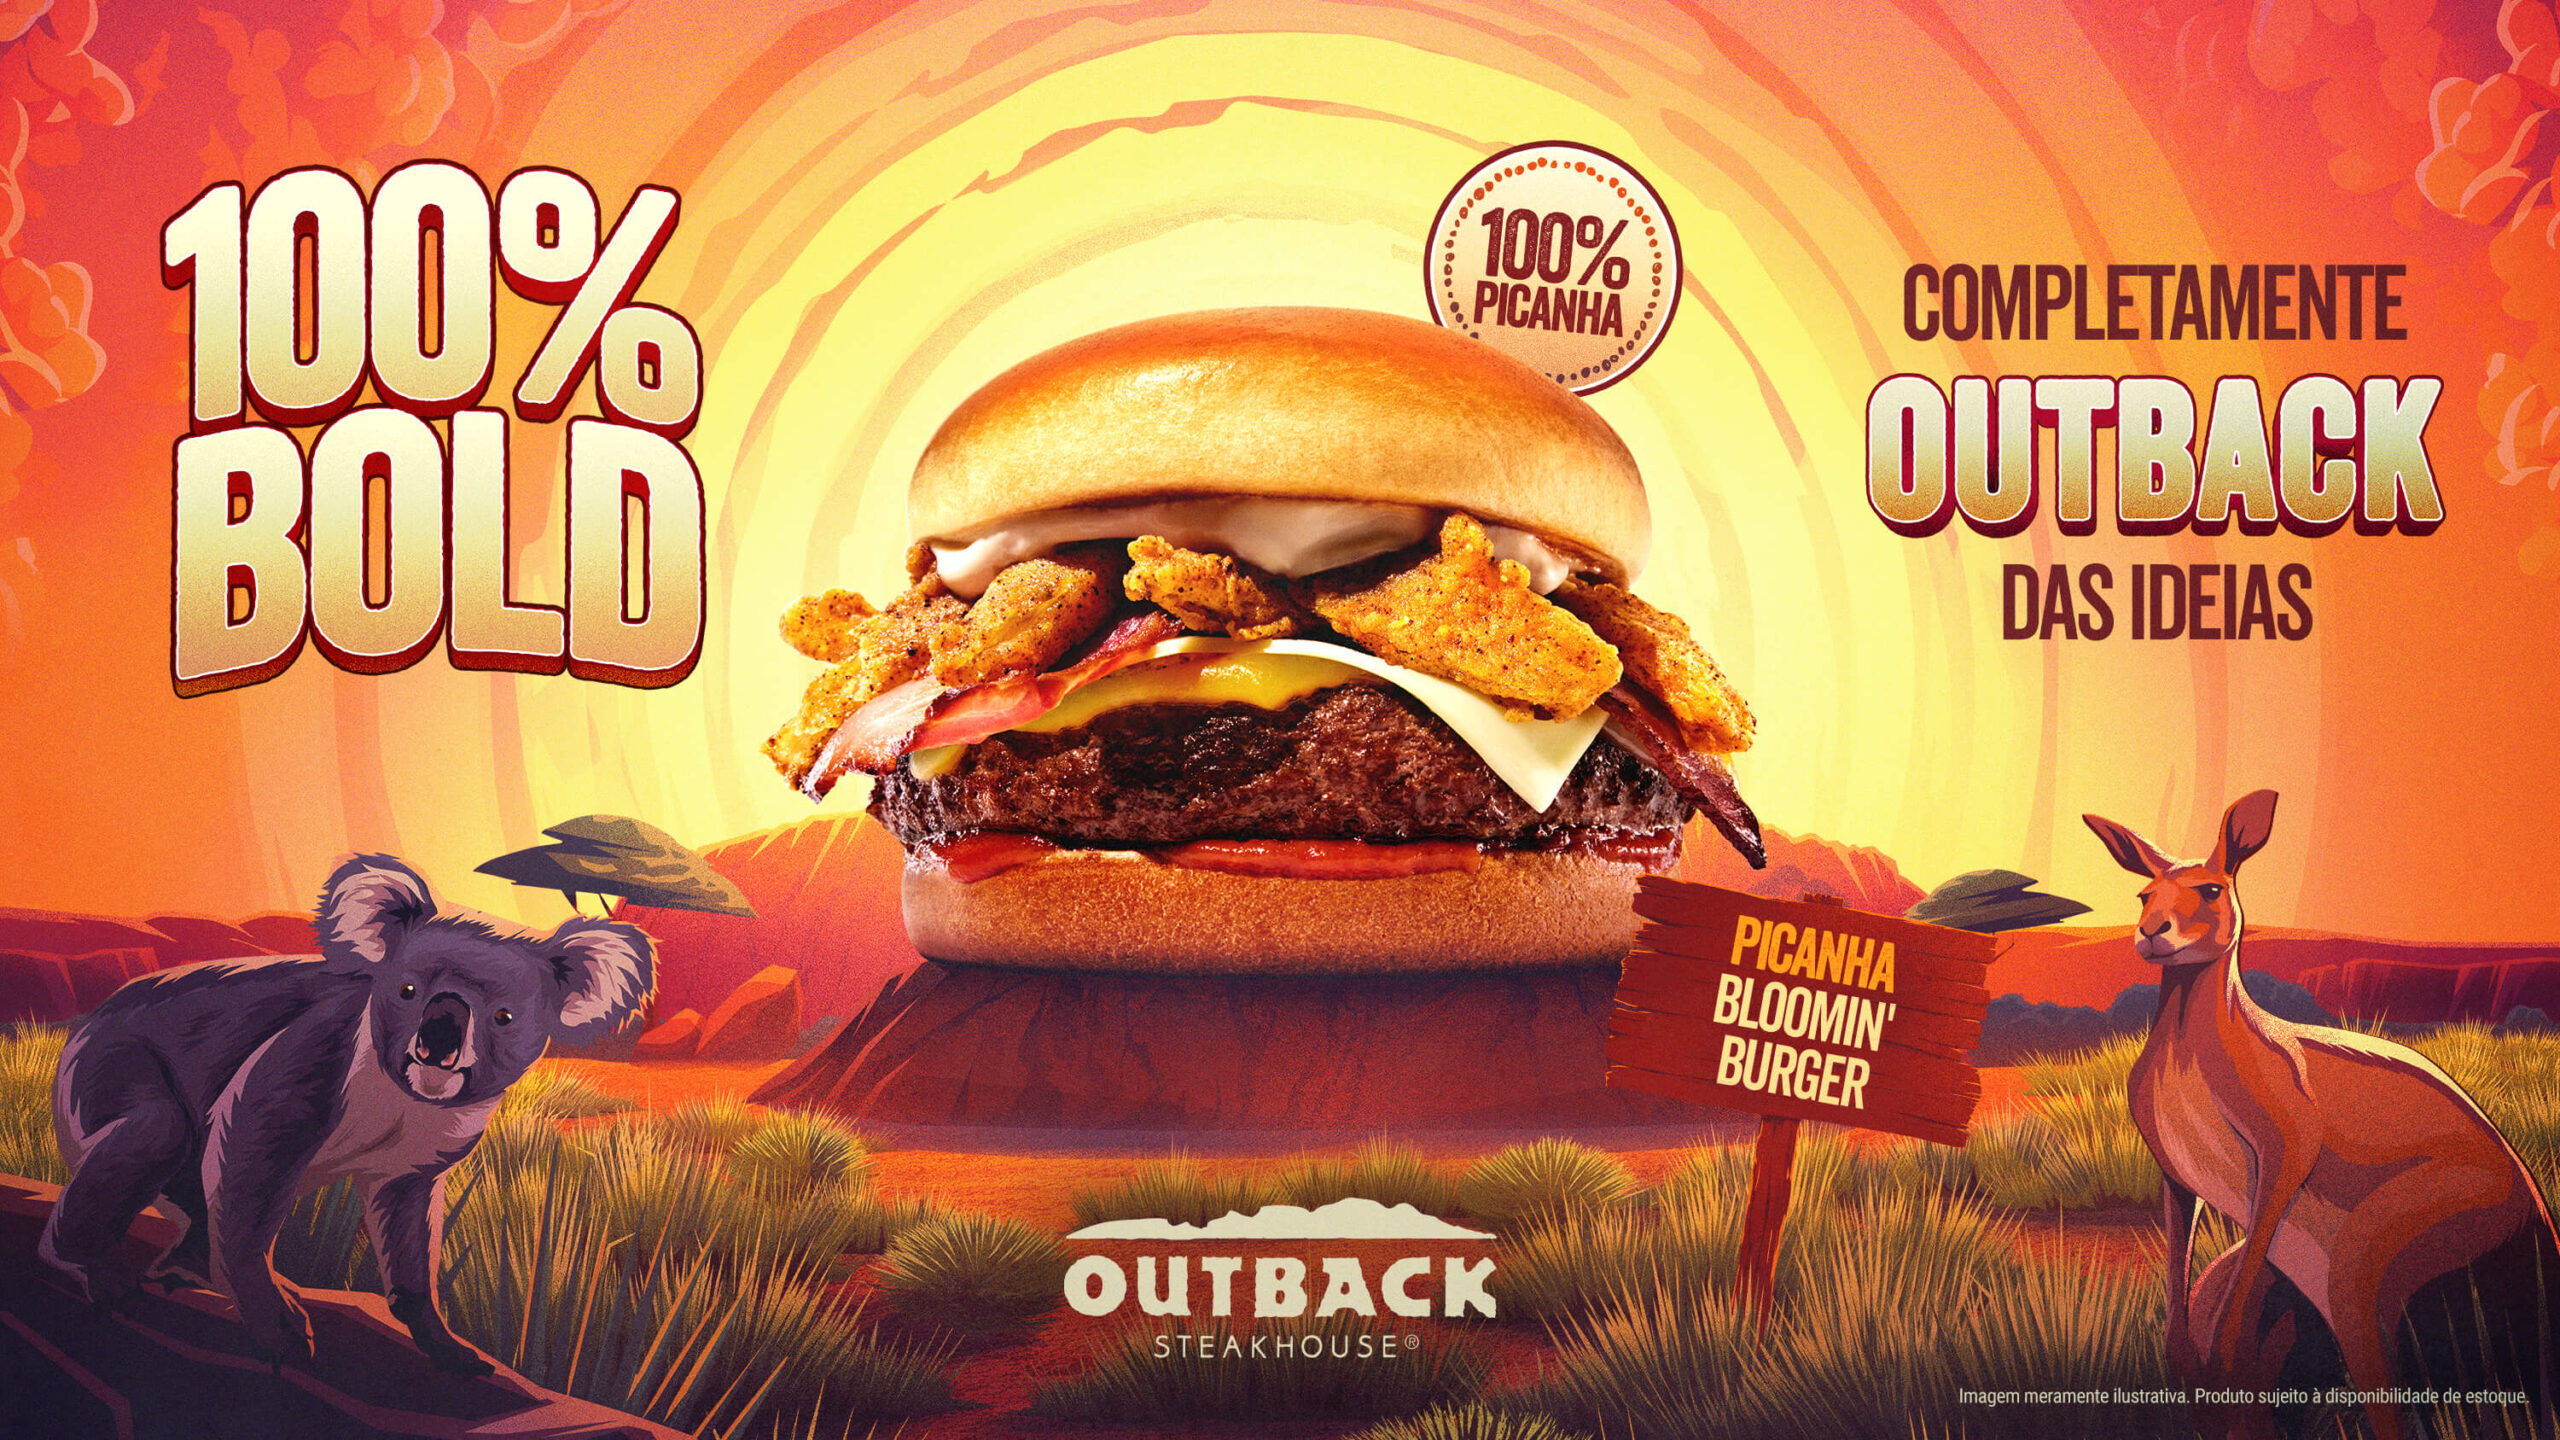 100% Bold: Outback apresenta hambúrgueres inéditos feitos de 100% picanha e 100% de sua clássica costela, além de uma versão do brownie com NUTELLA®️